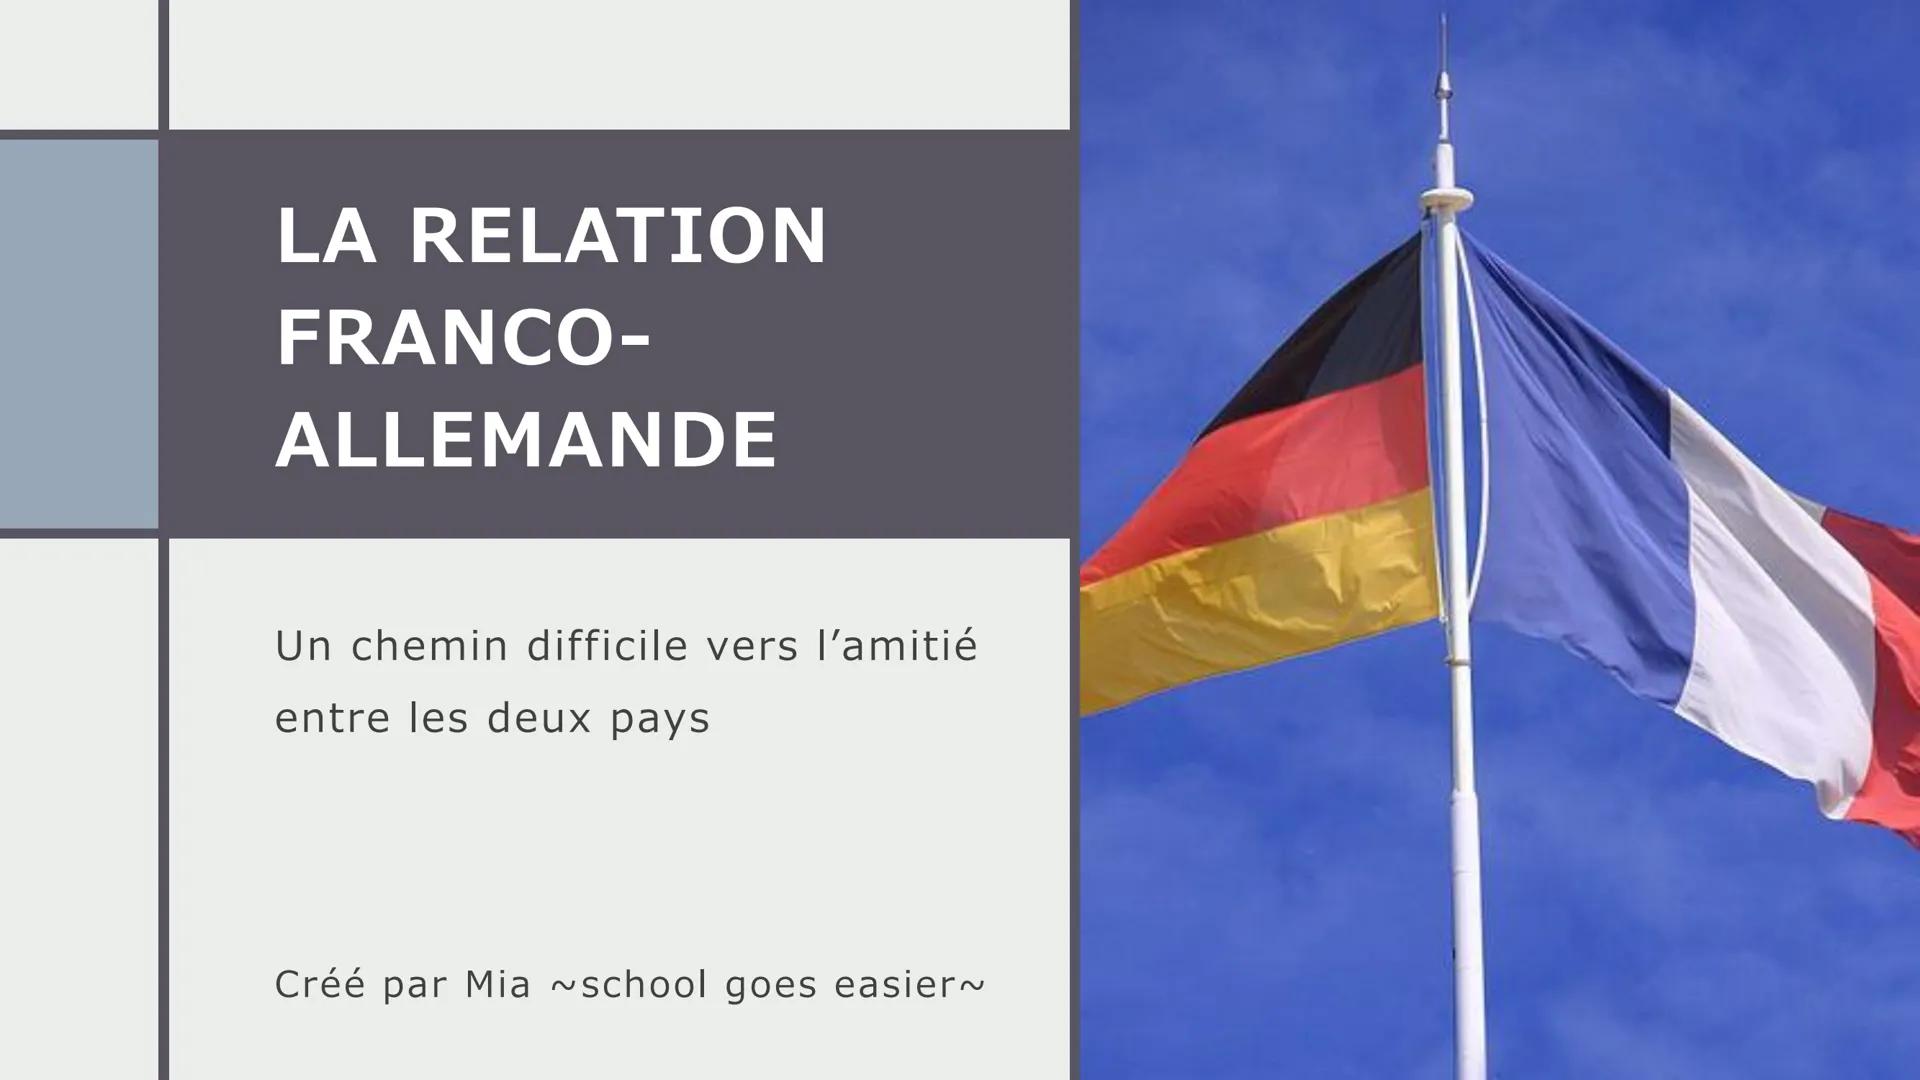 LA RELATION
FRANCO-
ALLEMANDE
—
Un chemin difficile vers l'amitié
entre les deux pays
Créé par Mia ~school goes easier~ table des
matières
1